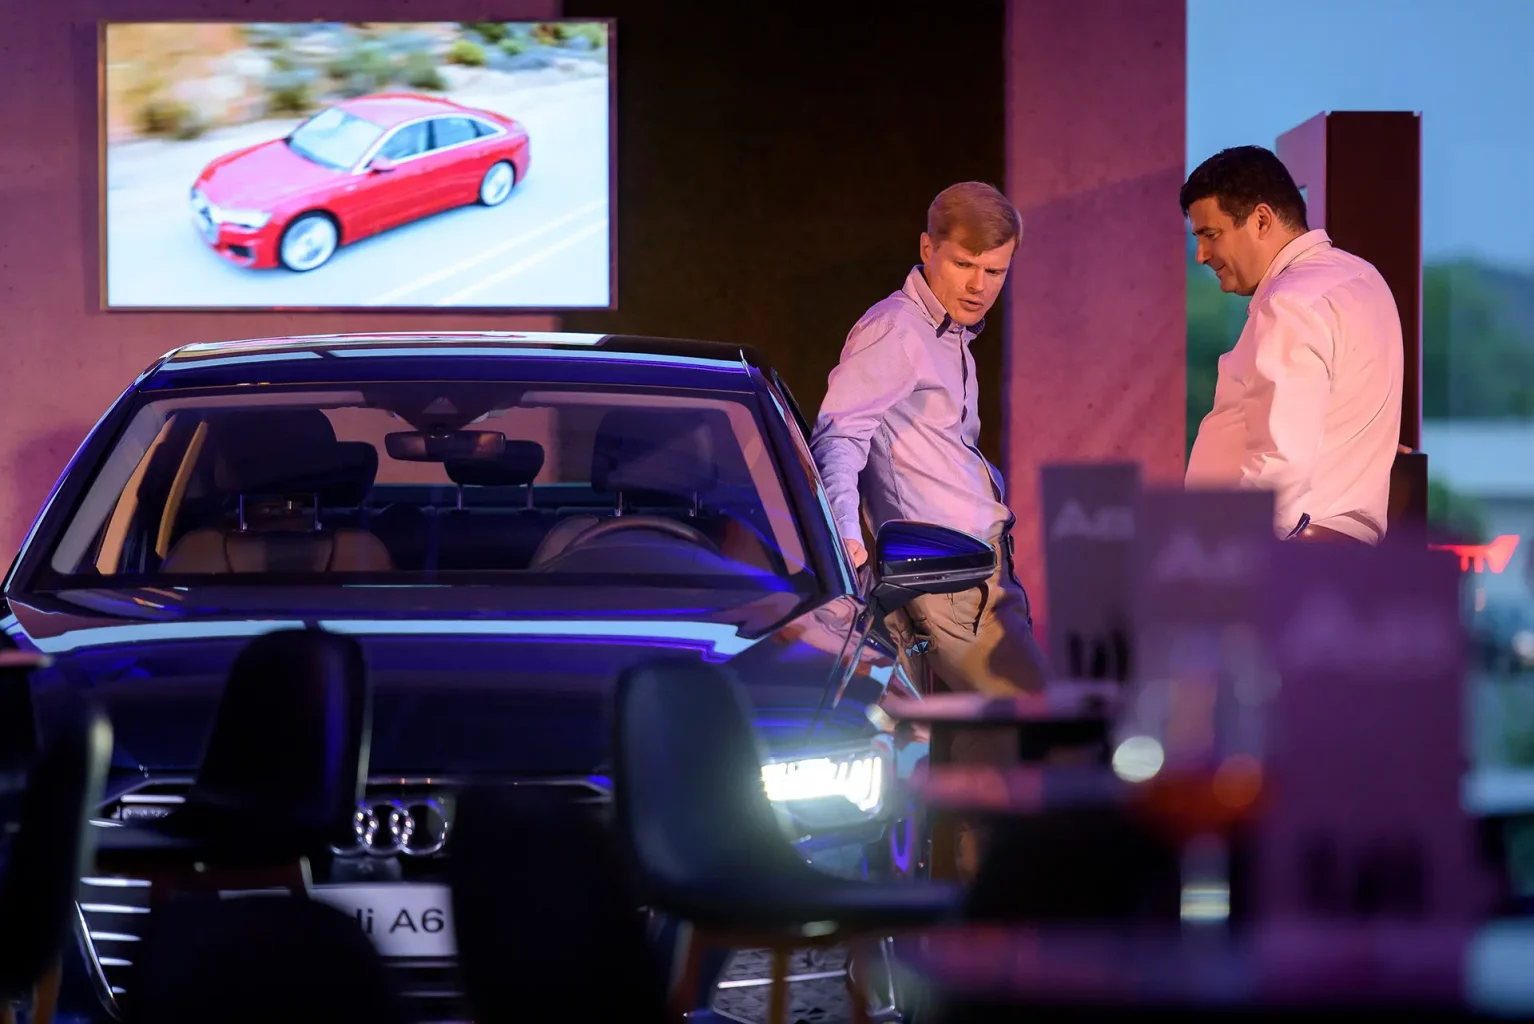 Audi A6 elölről fotózva, ahogy a lámpája világít a bemutató rendezvényen, miközben egy férfi nekitámaszkodik oldalról.